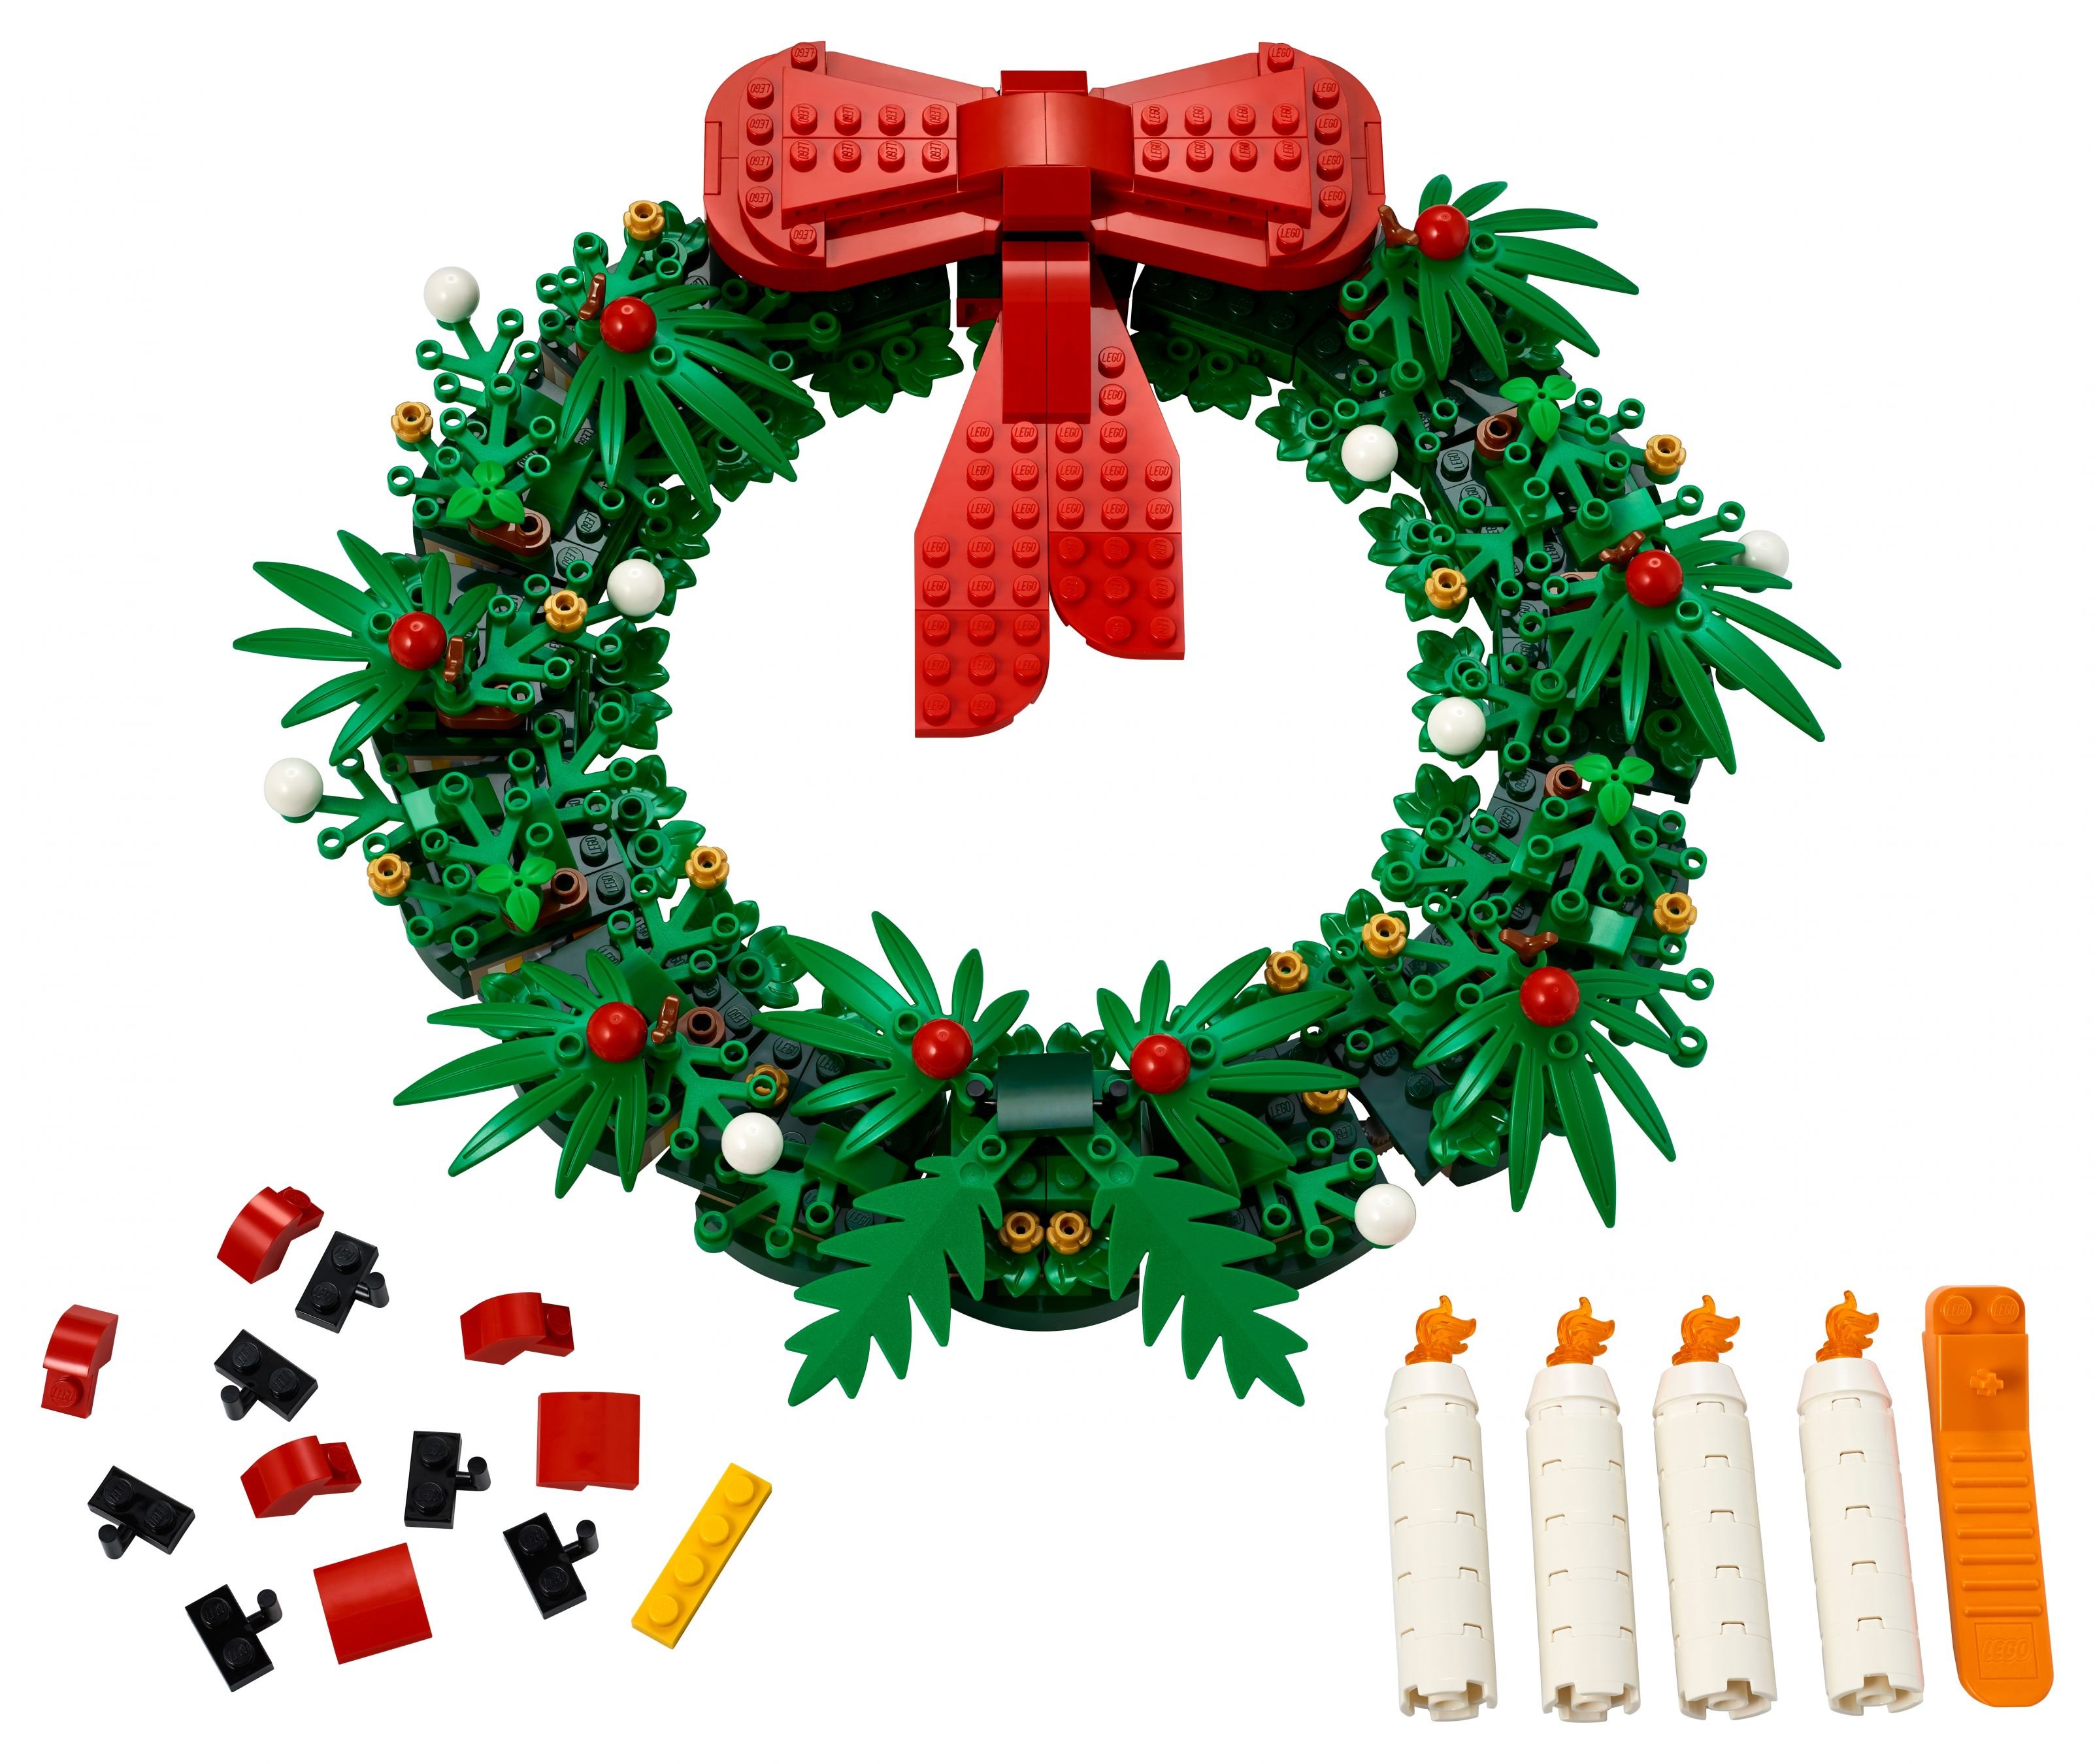 OVP LEGO 40426 Türkranz Adventskranz 2-in-1 Christmas Wreath Weihnachten NEU 